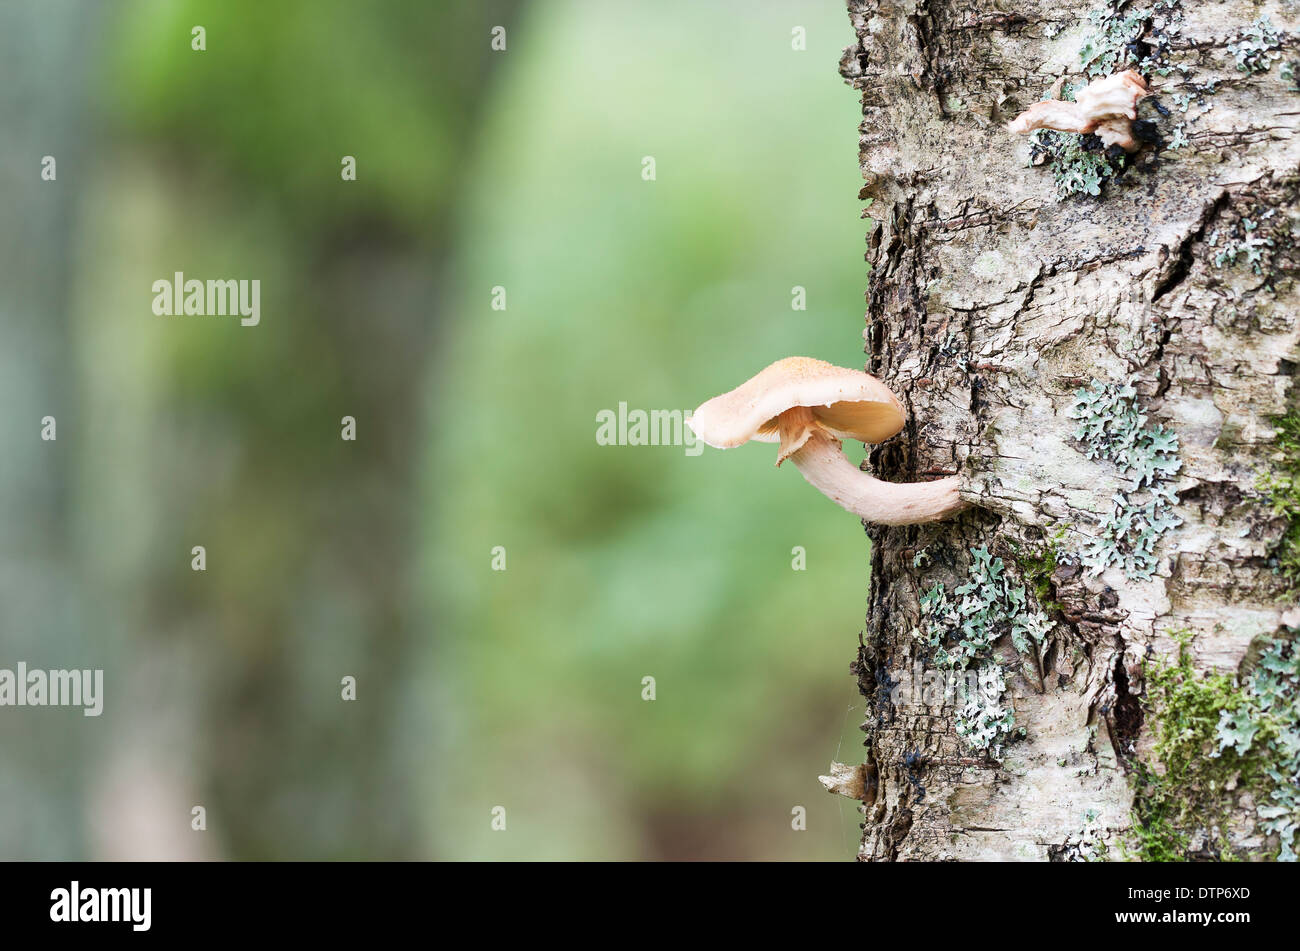 Pocas setas u hongos crecen en un tronco de árbol de abedul en otoño Foto de stock